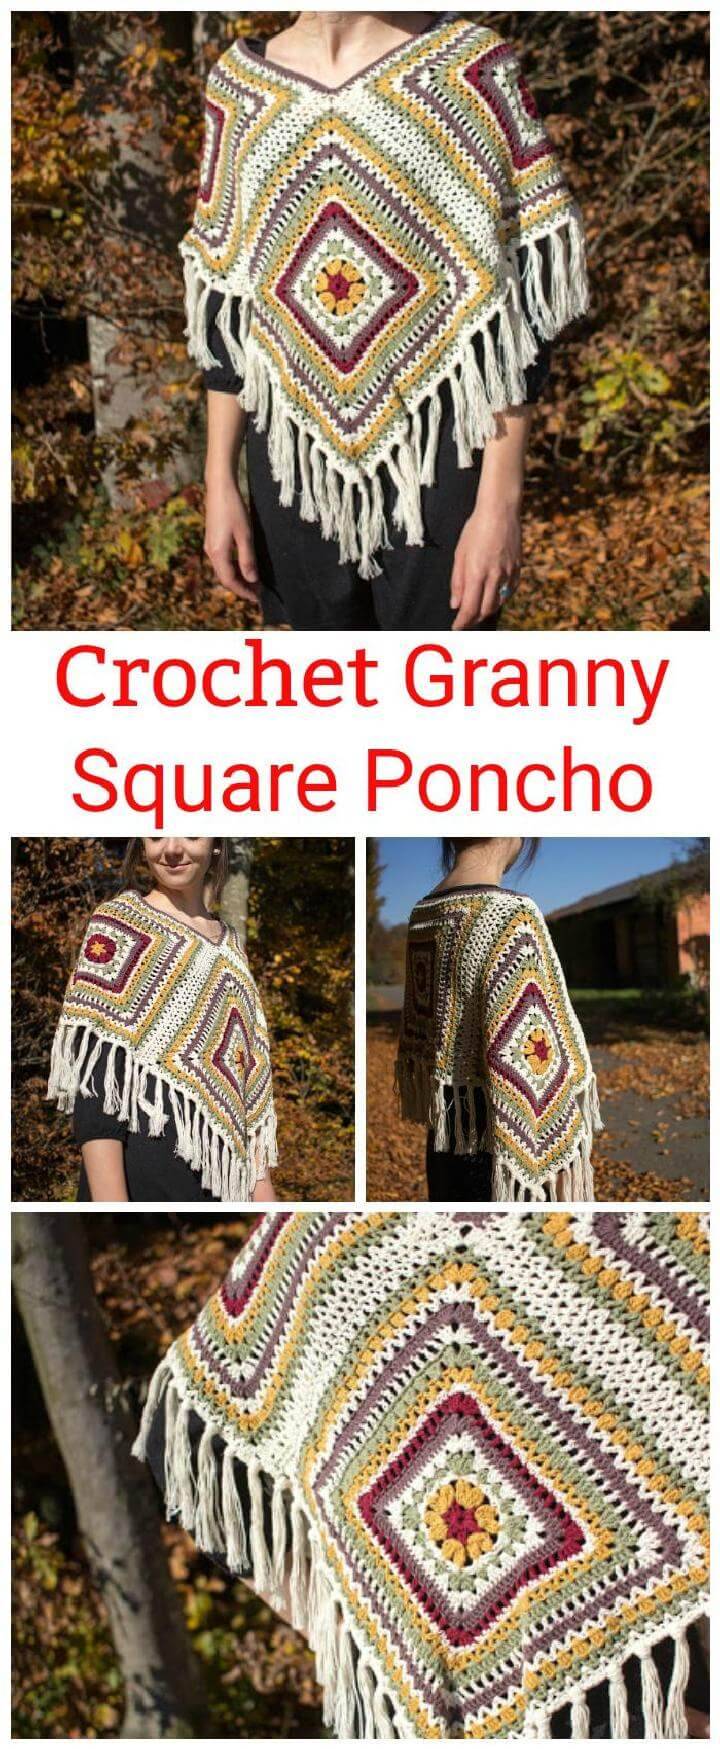 Crochet Granny Square Poncho